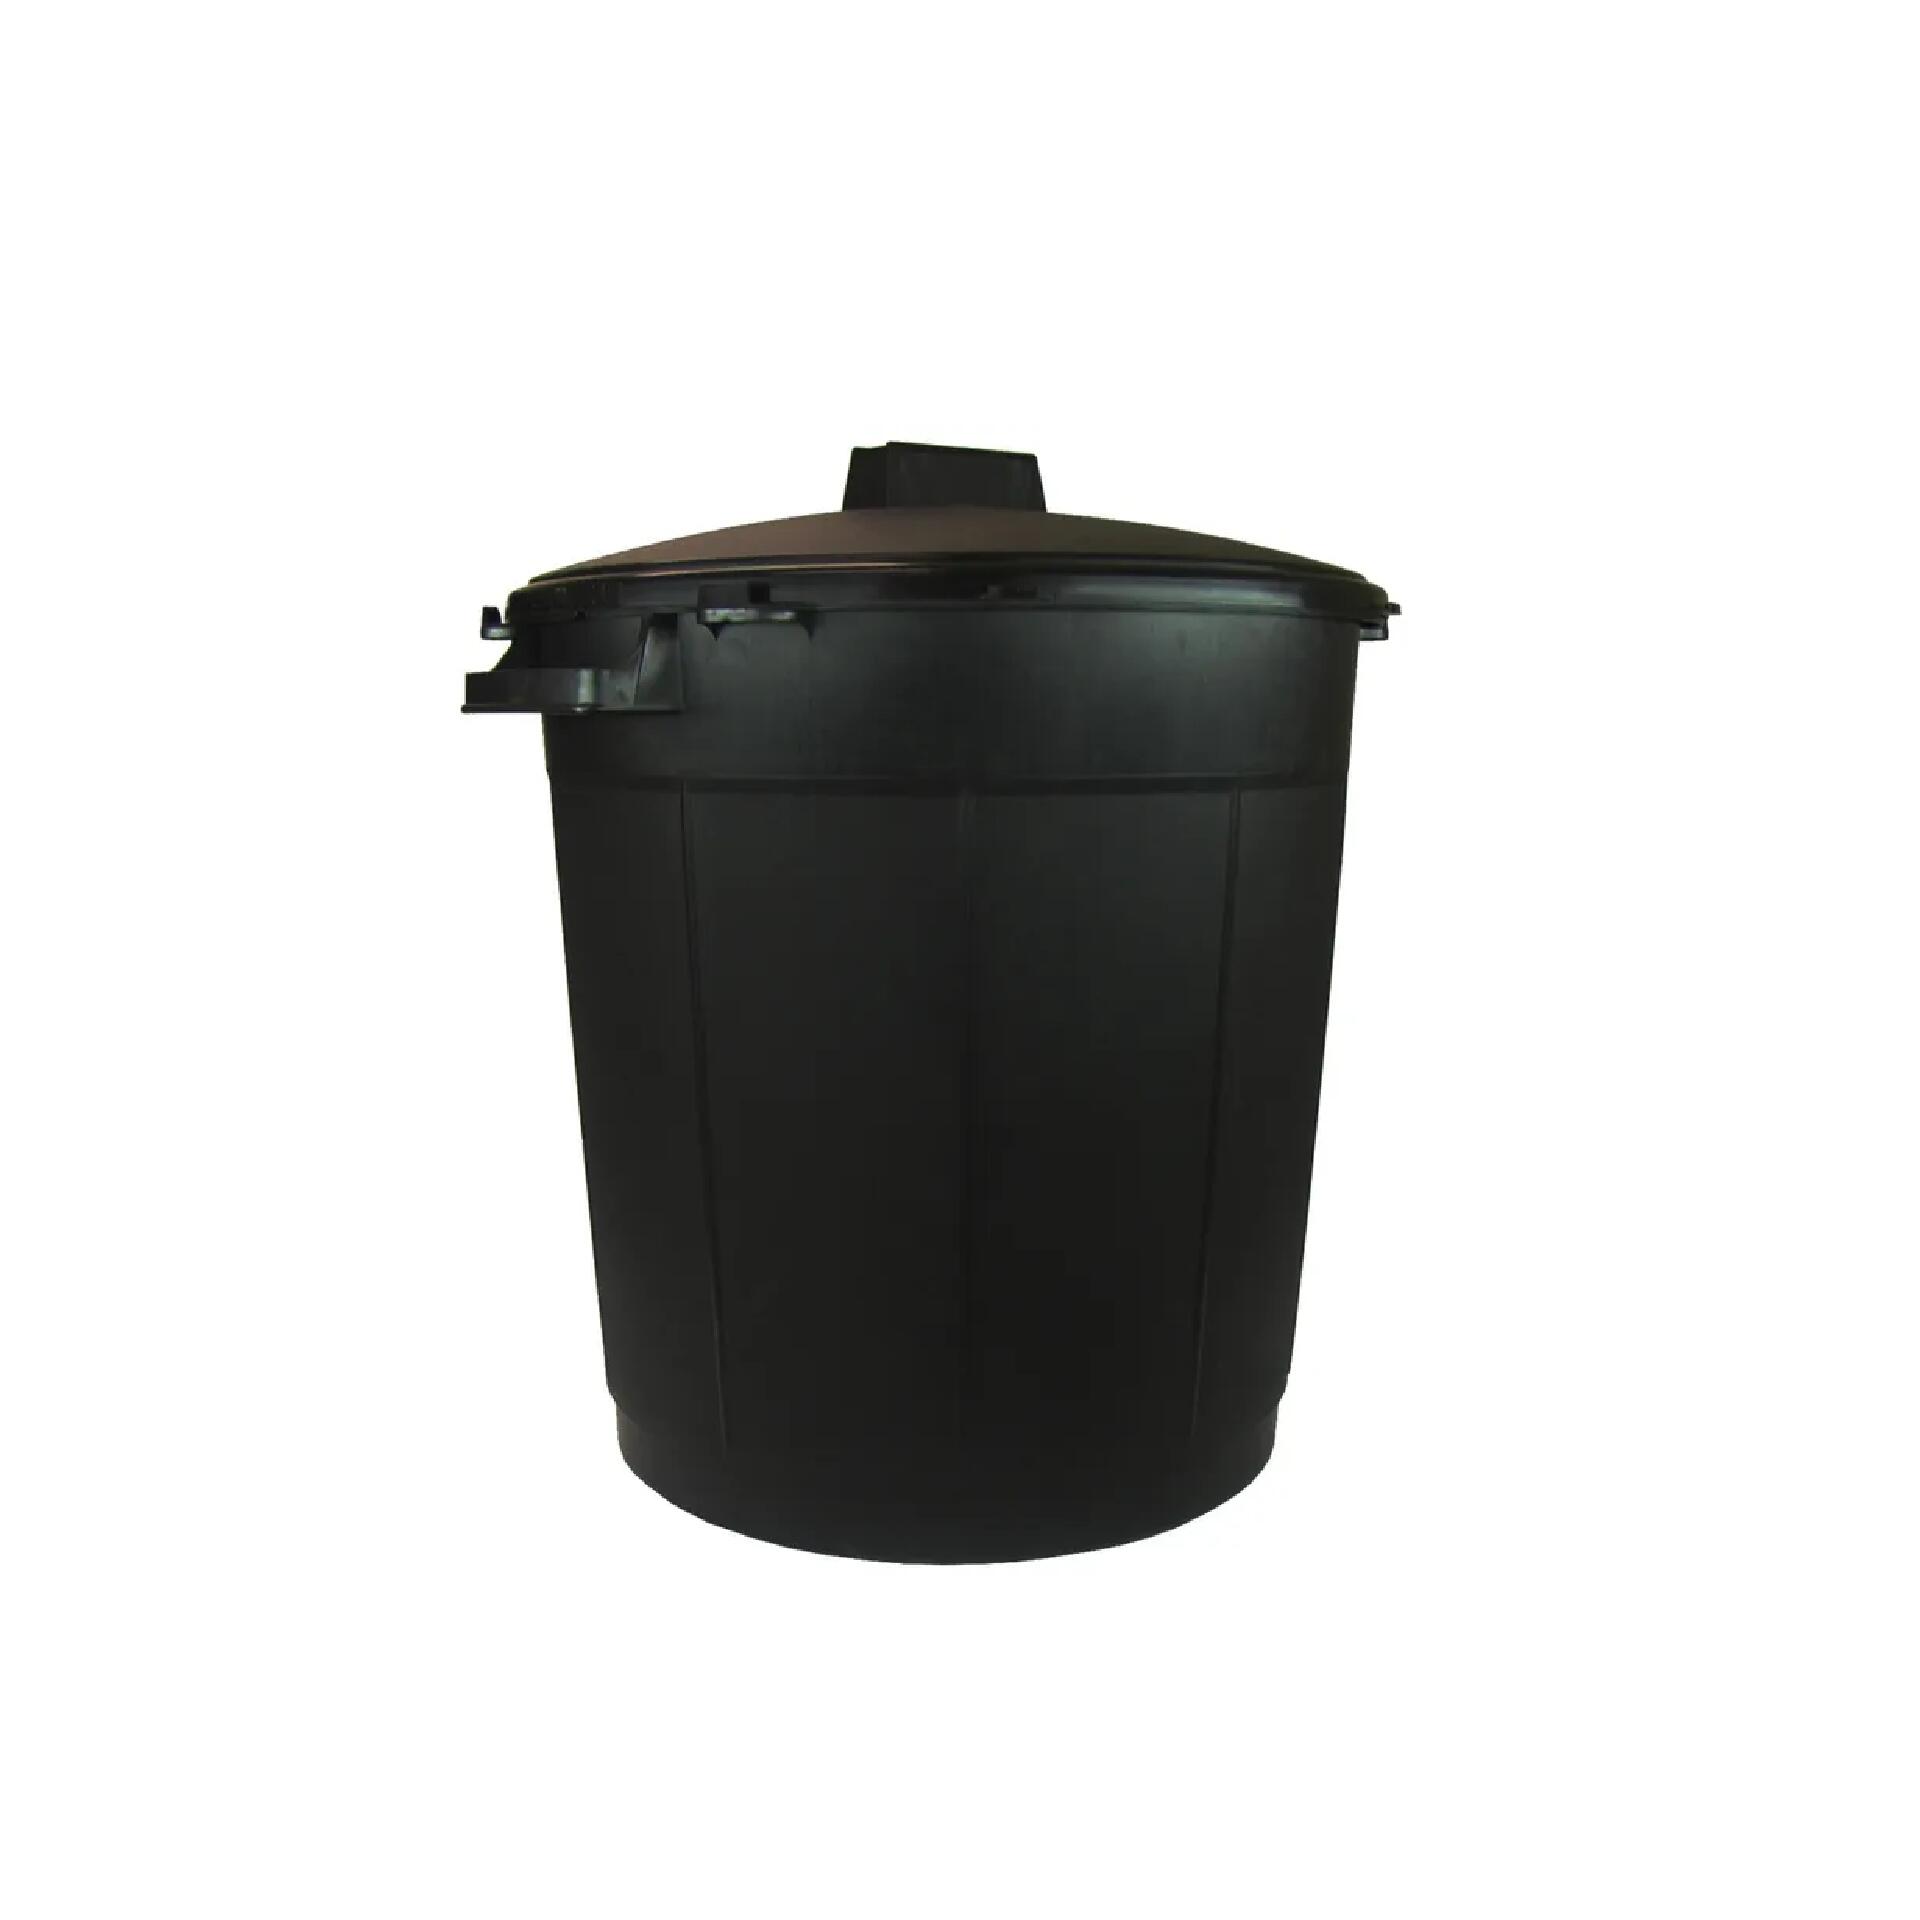 PerfectFit sac poubelle compost. Type K, 10 L, 1…